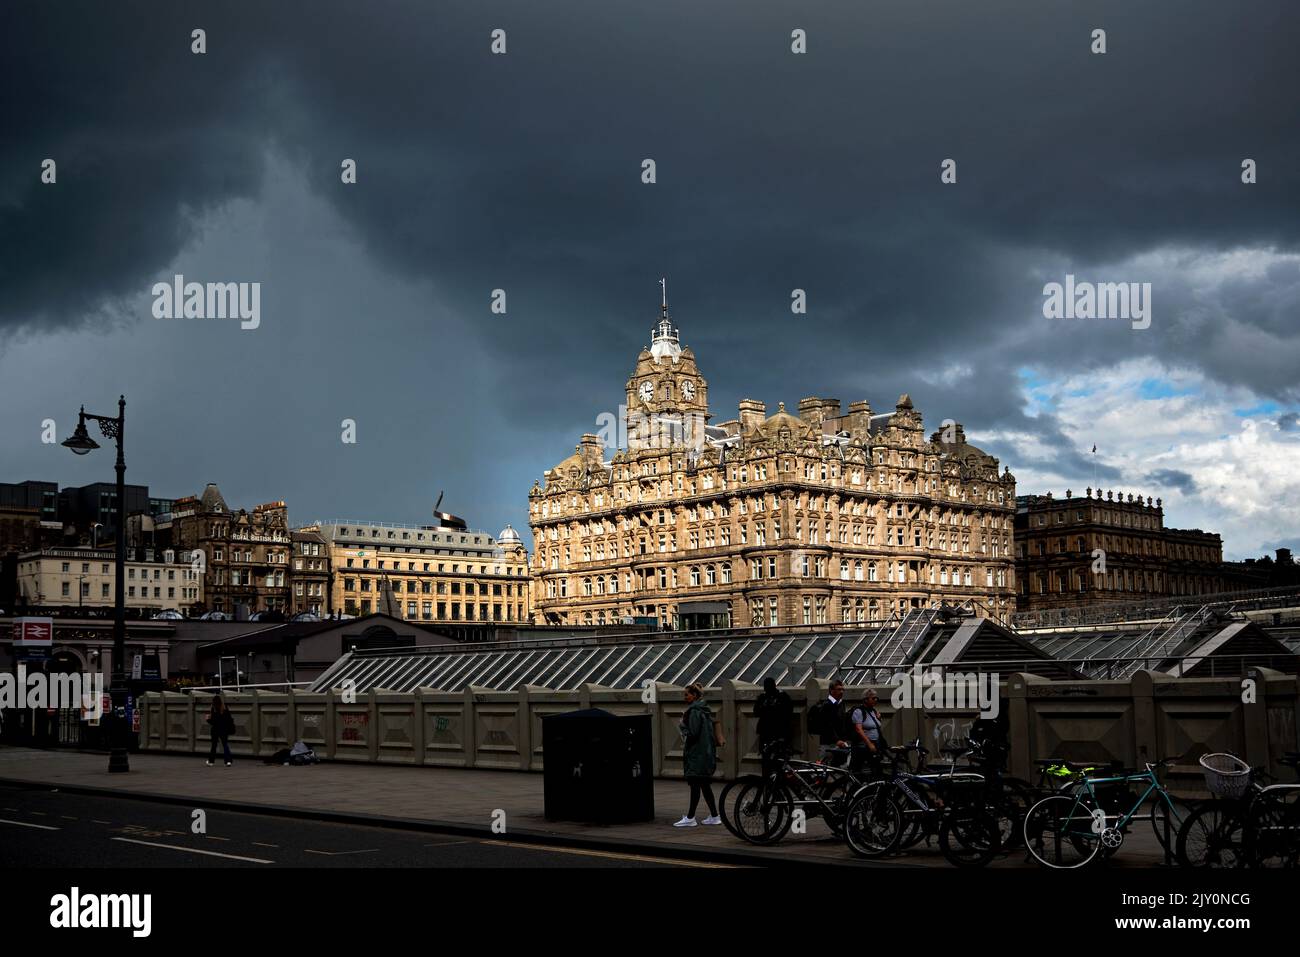 Das Sonnenlicht fällt auf das Balmoral Hotel in der Princes Street, und es kommen immer mehr Regenwolken. Edinburgh, Schottland, Großbritannien. Stockfoto